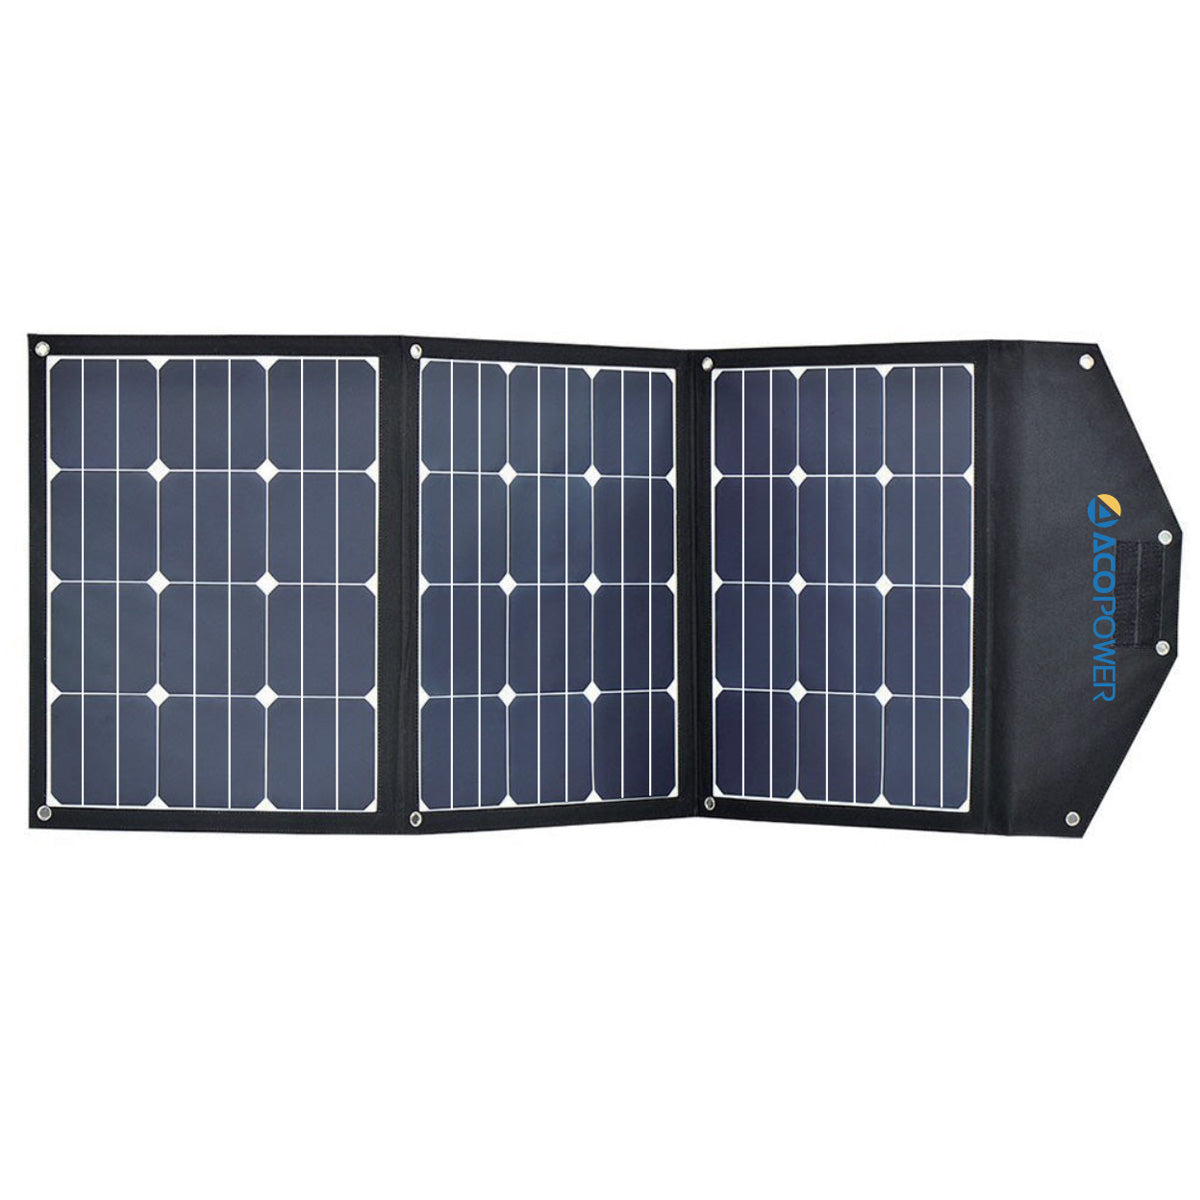 LiONCooler Combo, refrigerador/congelador solar portátil X50A (52 cuartos) y panel solar de 90 W